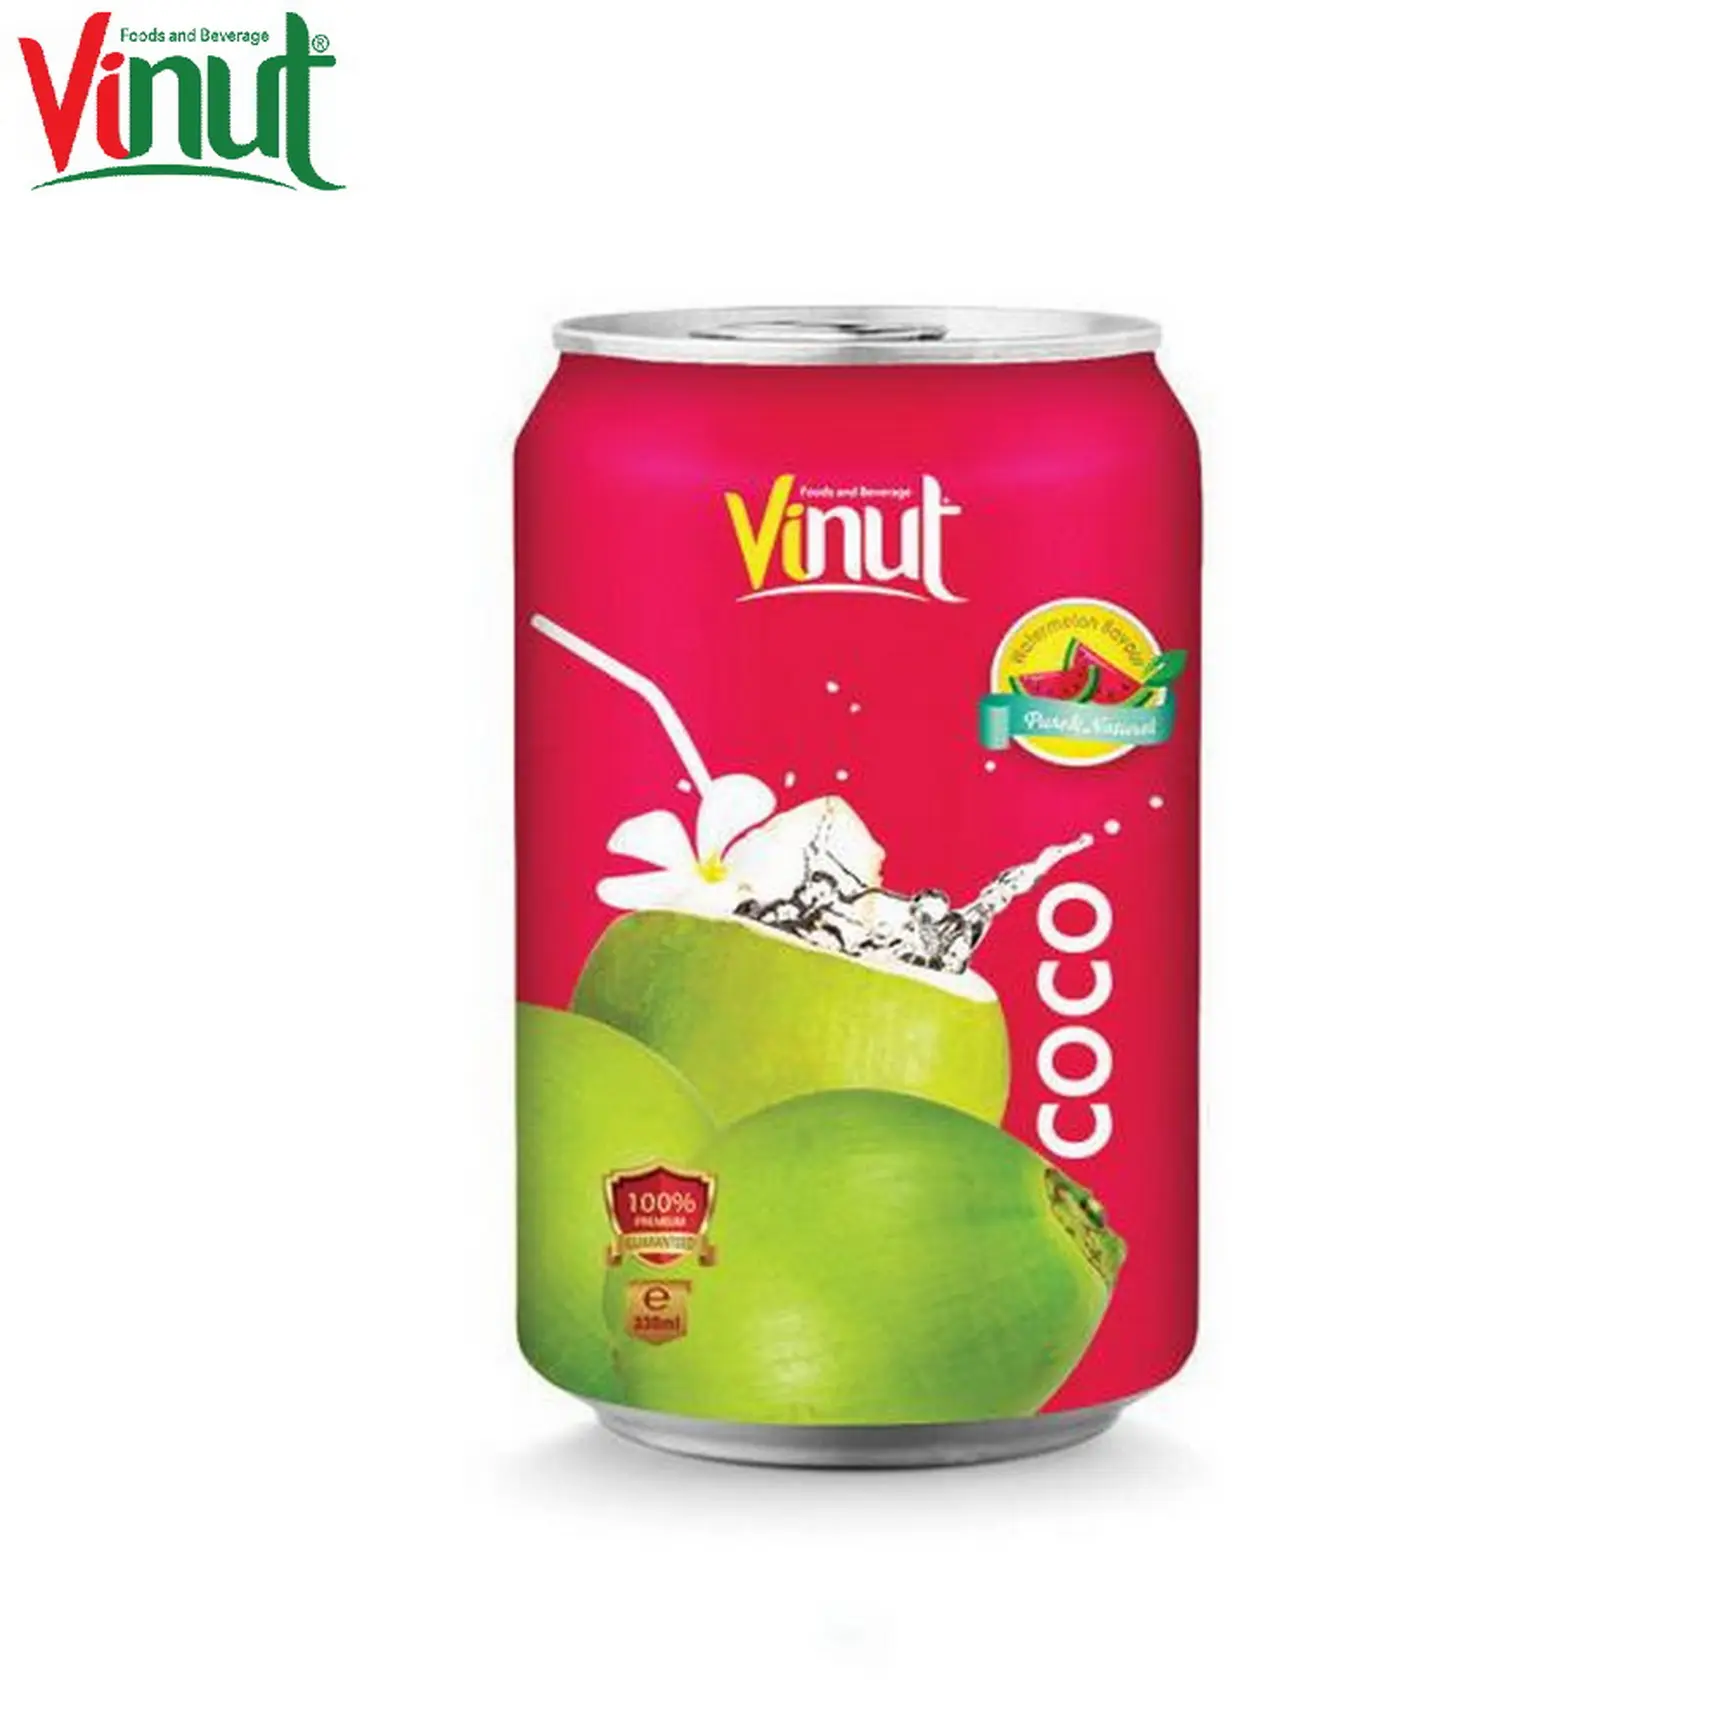 330ml VINUT Dose (verzinnt) Kokos wasser mit Wassermelone OEM Marke Hochwertiger Lieferant natürliche Inhaltsstoffe Salzarm in Vietnam